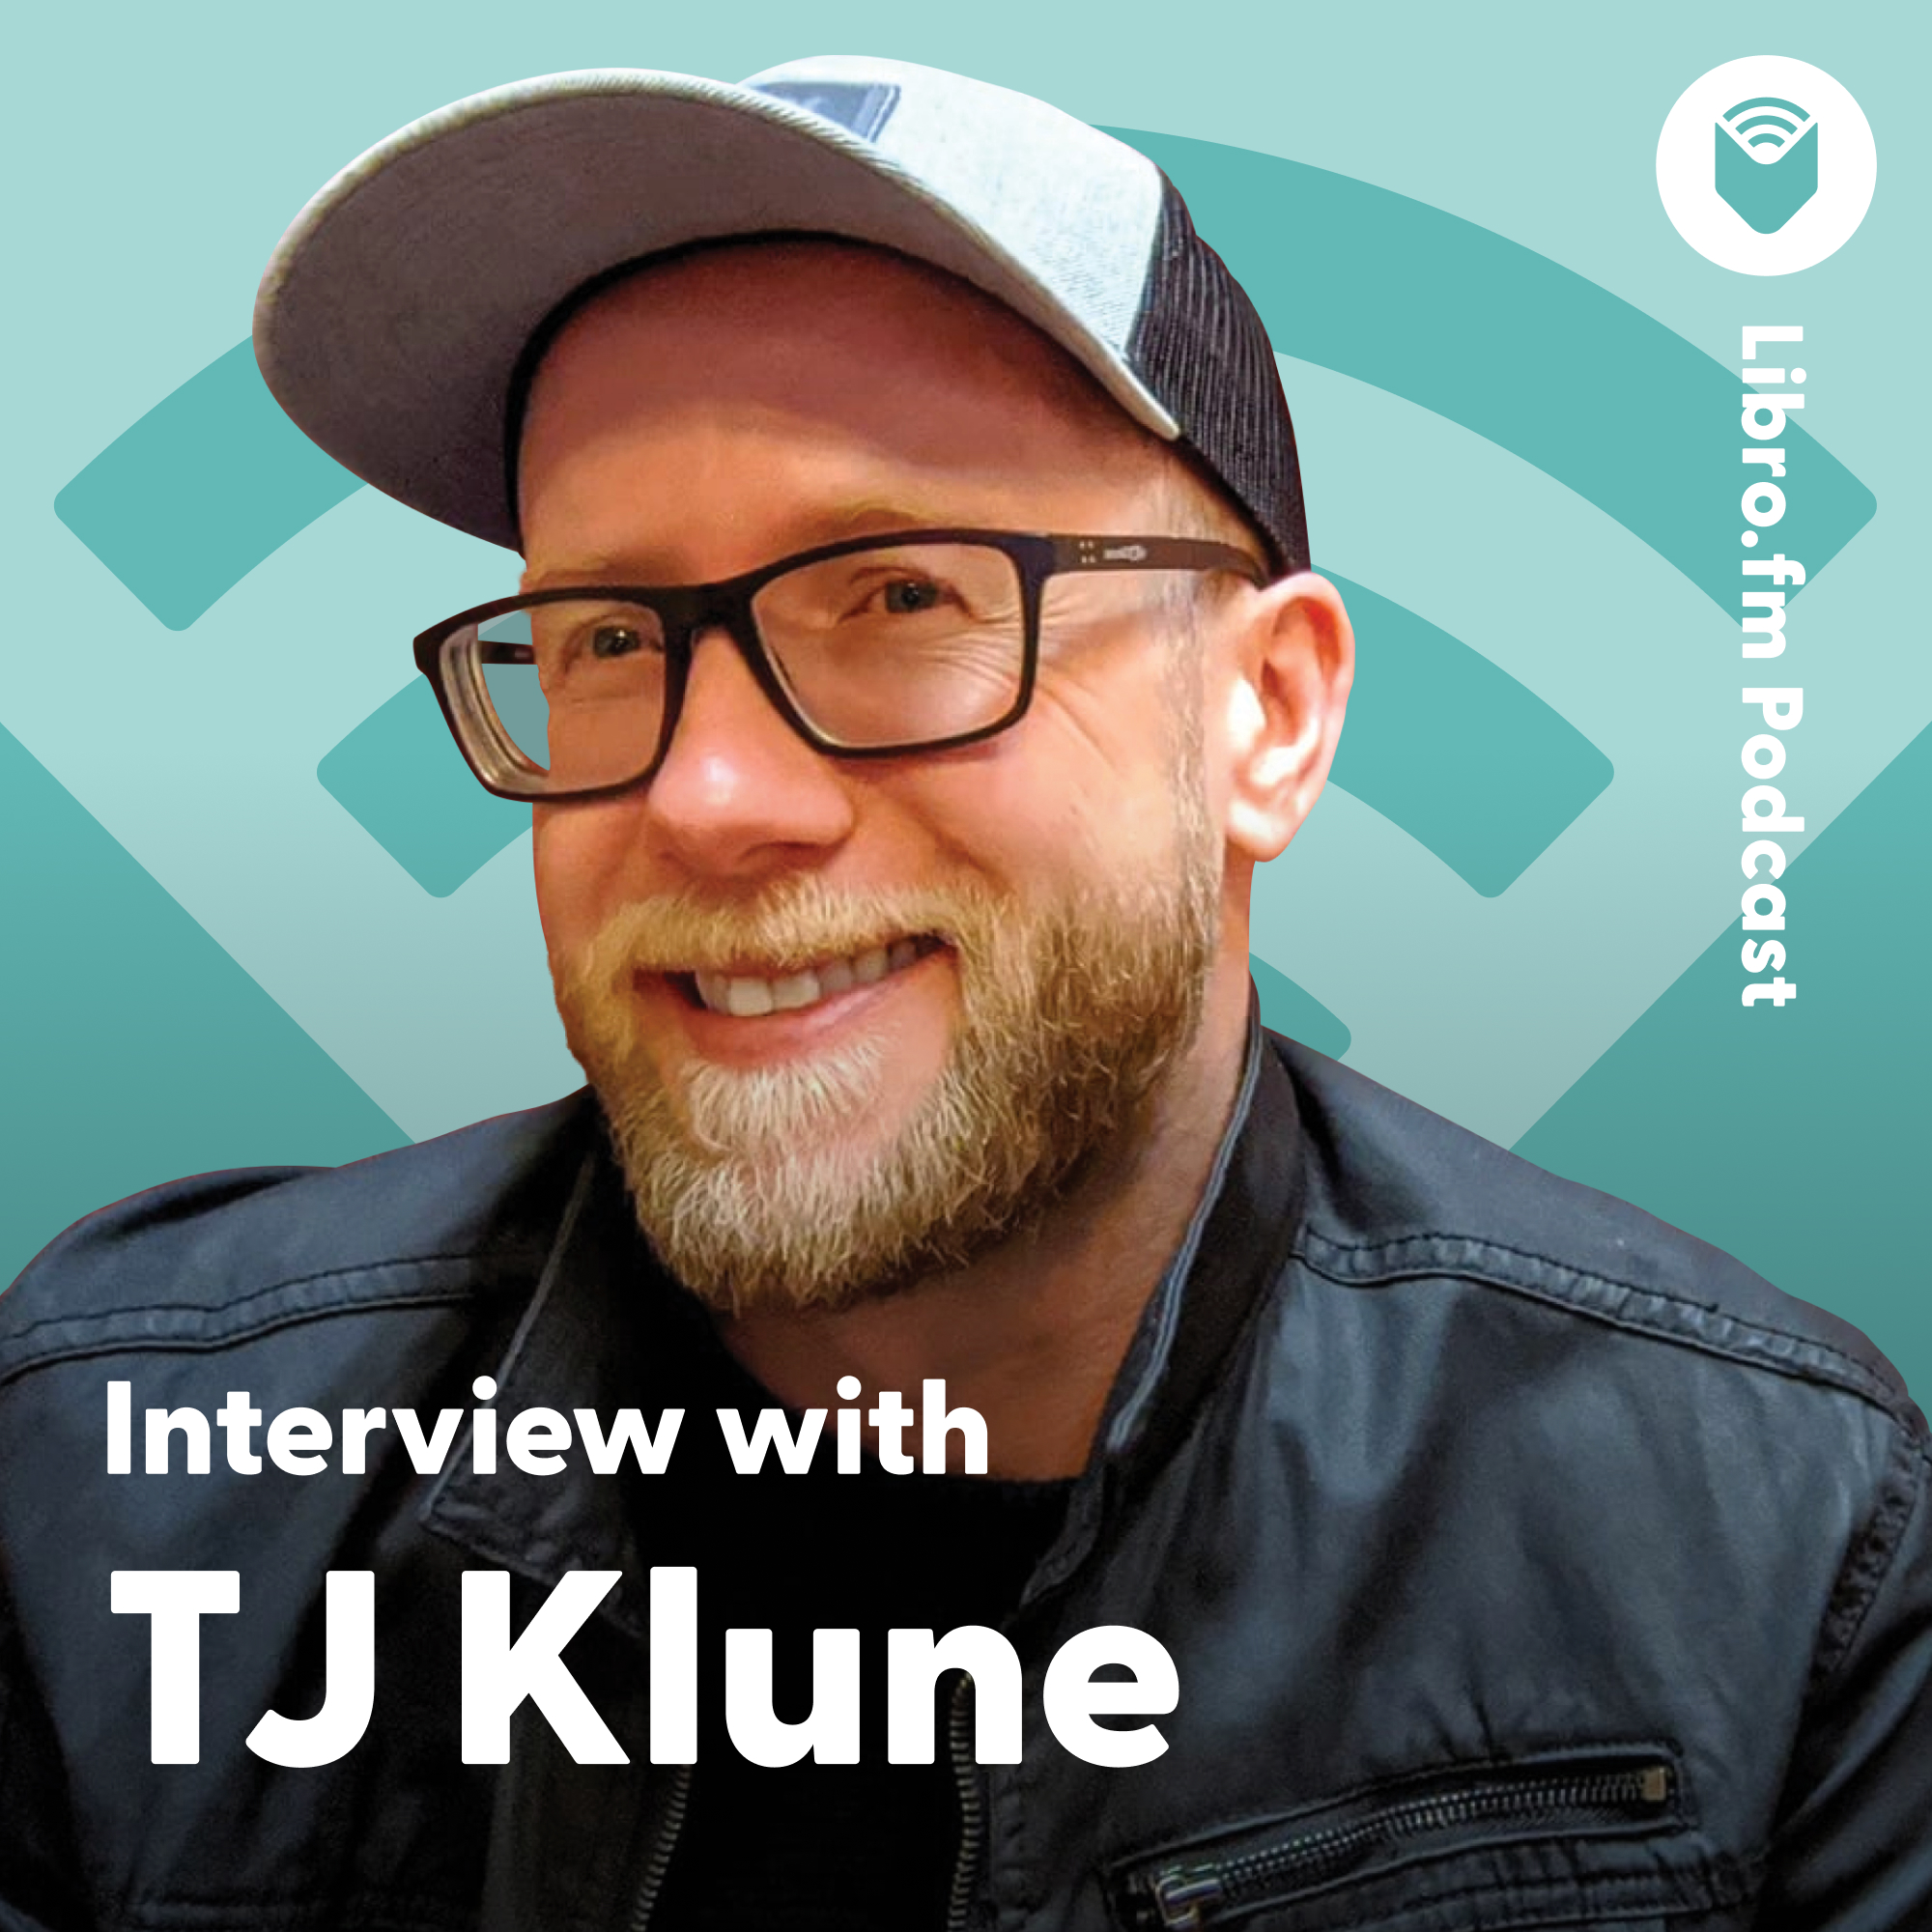 Libro.fm Podcast - Episode 15: “Interview with TJ Klune - Libro